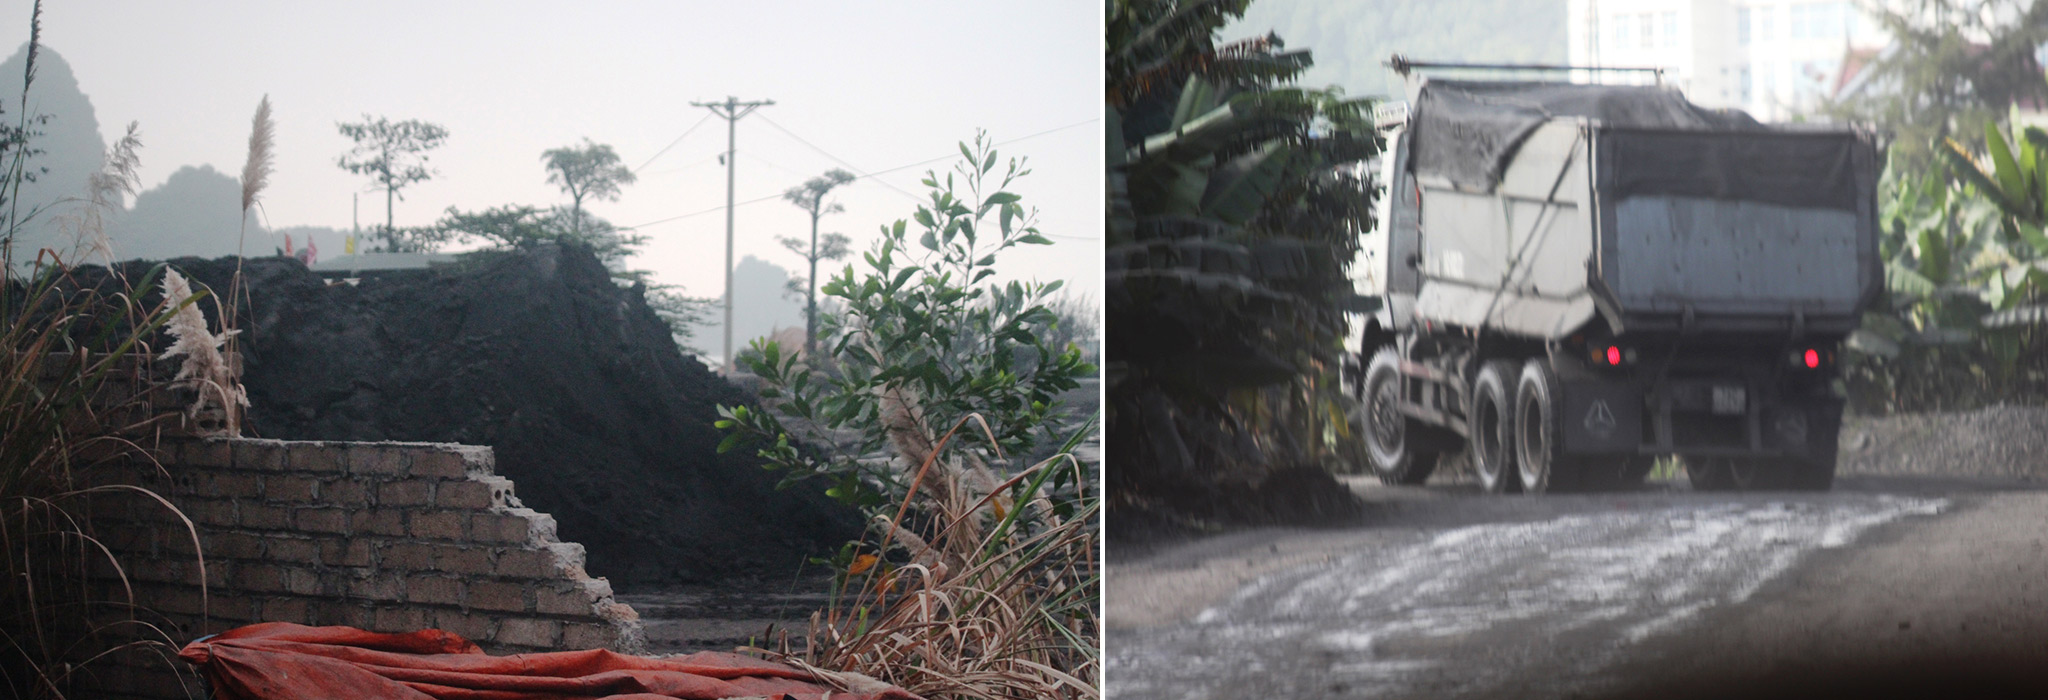 Xít thải lẫn than được các xe tải trọng lớn chở về tập các điểm tập kết trong và ngoài khu vực Cụm công nghiệp Cẩm Thịnh. (Ảnh: P.V/Vietnam+)